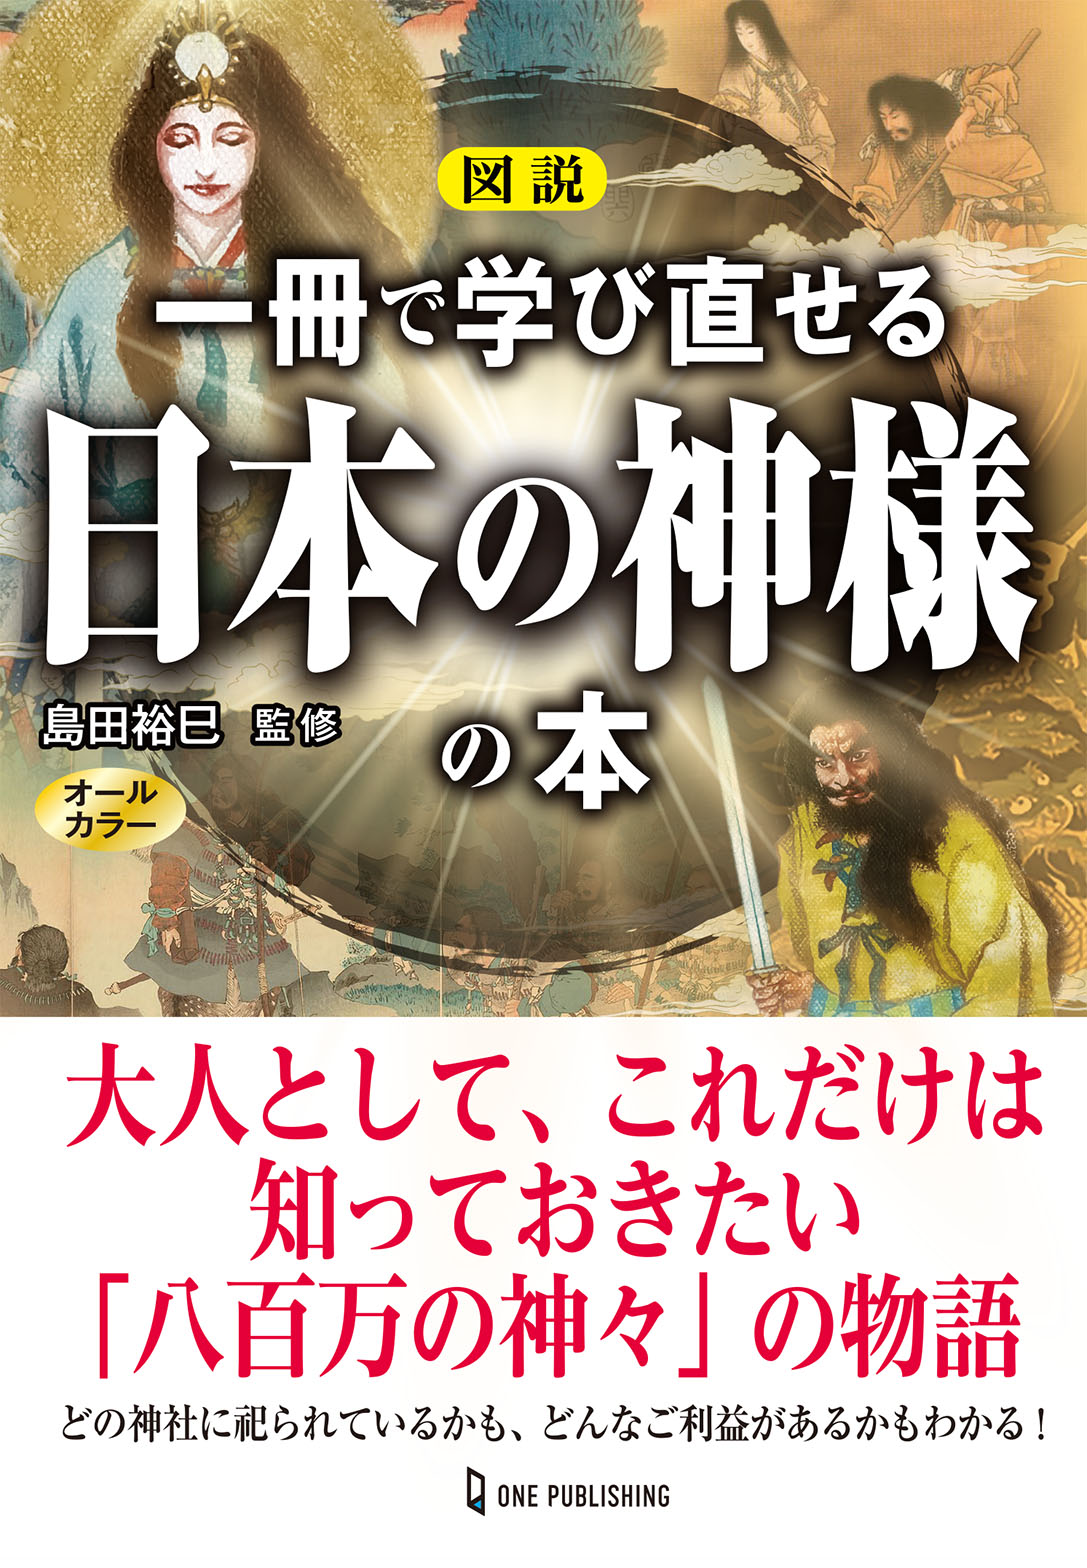 3月26日発売 日本の神様を知らずして この国の歴史と 今 はわからない 図説 一冊で学び直せる日本の神様の本 発売 株式会社ワン パブリッシングのプレスリリース